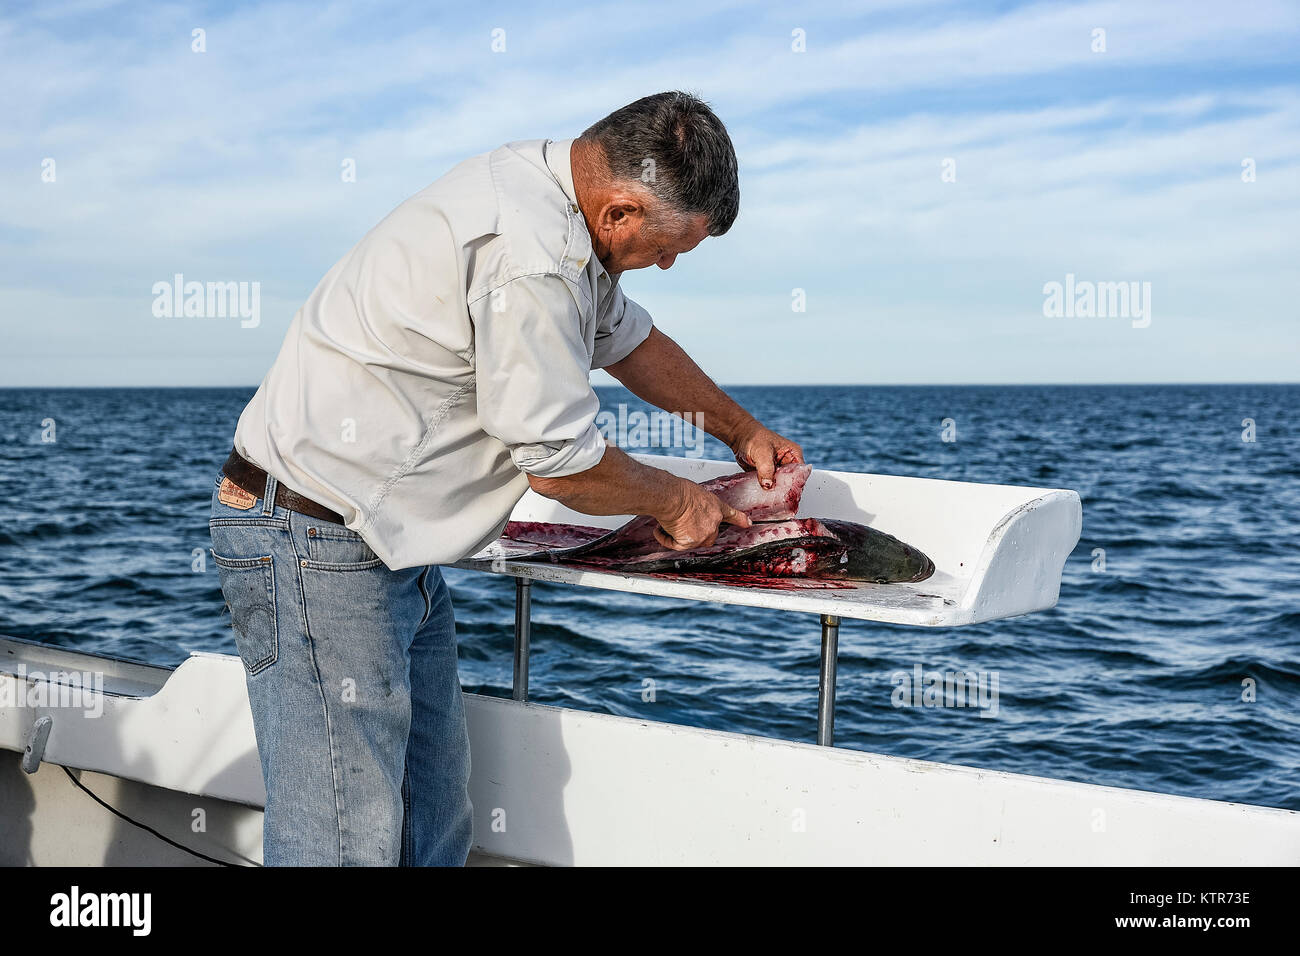 Le nettoyage d'un poisson fraîchement pêché sur le bateau, Cape Cod, Massachusetts, États-Unis. Banque D'Images